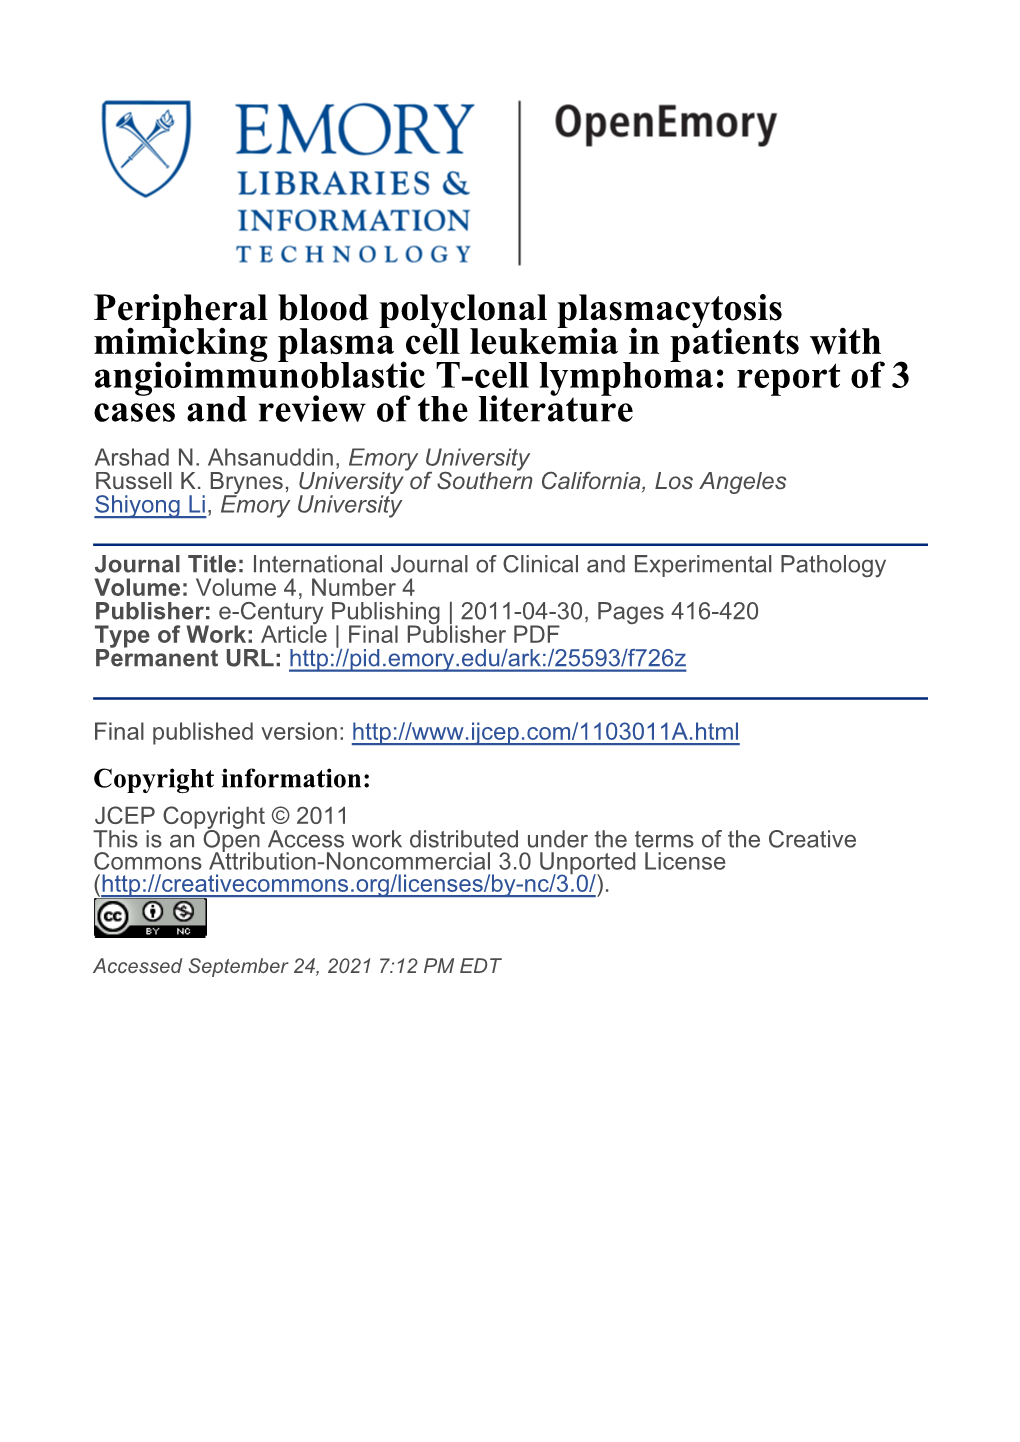 Peripheral Blood Polyclonal Plasmacytosis